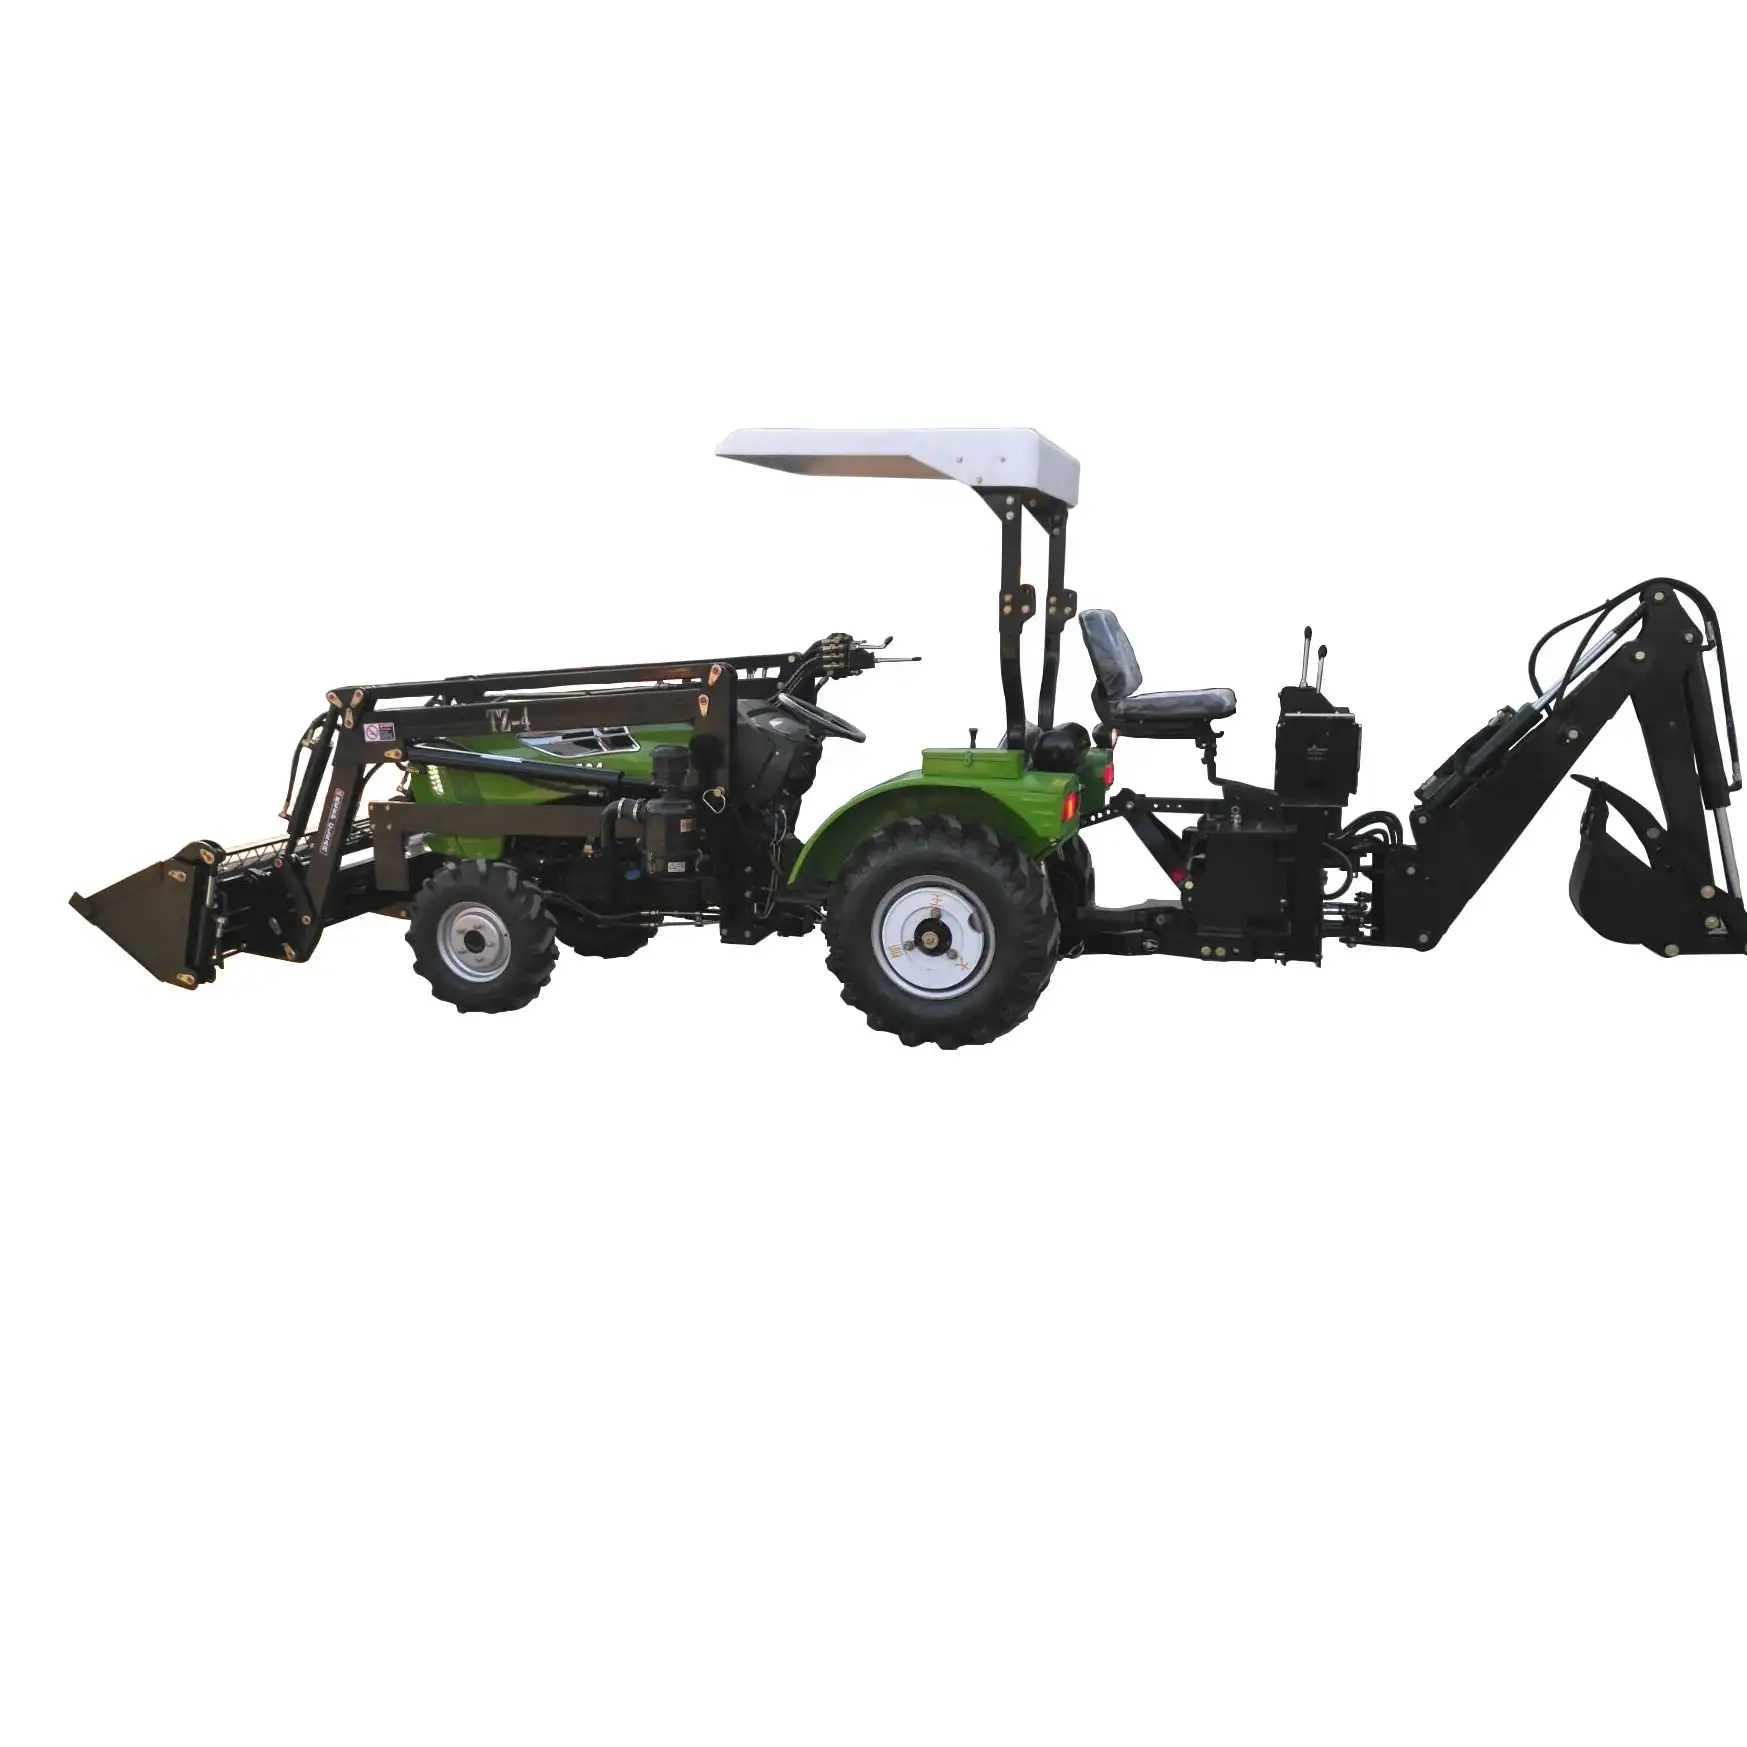 Mini Tractor agrícola usado con cargador frontal y retroexcavadora de suministro de fábrica de China